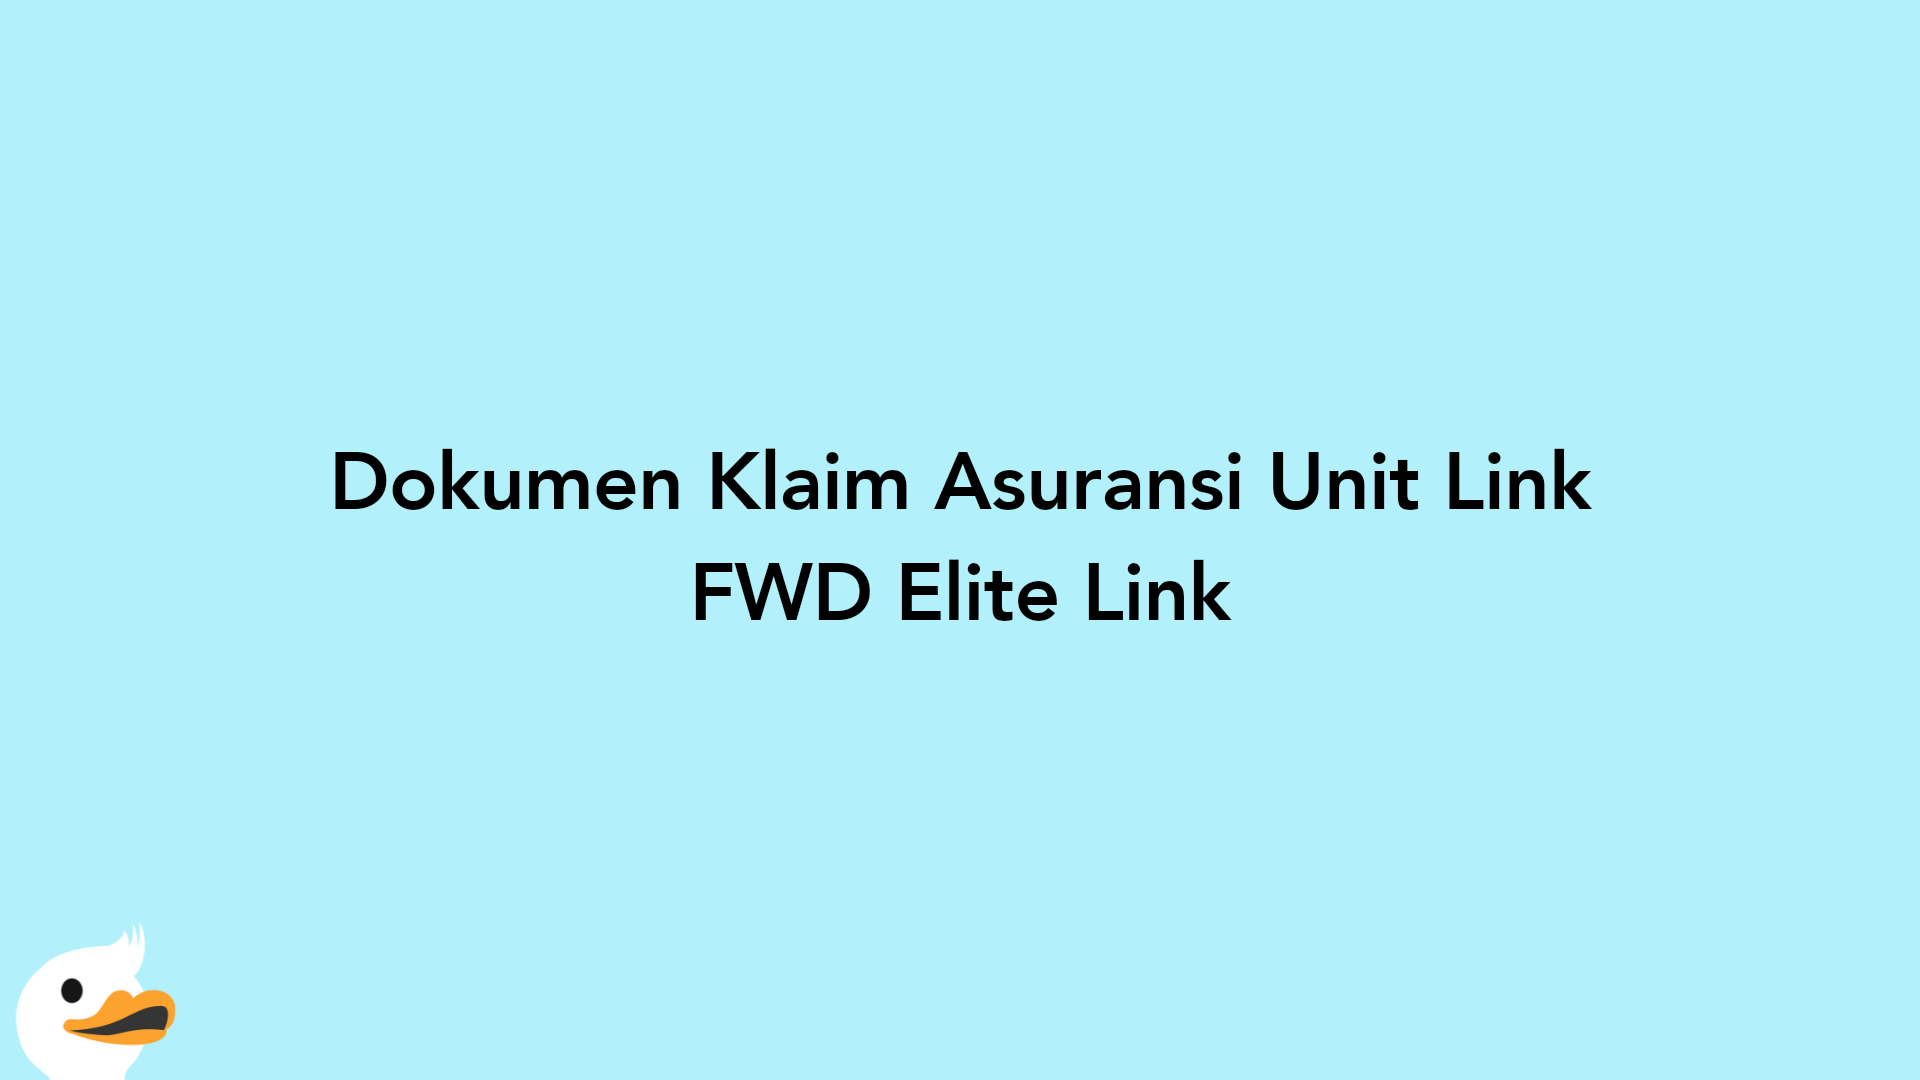 Dokumen Klaim Asuransi Unit Link FWD Elite Link